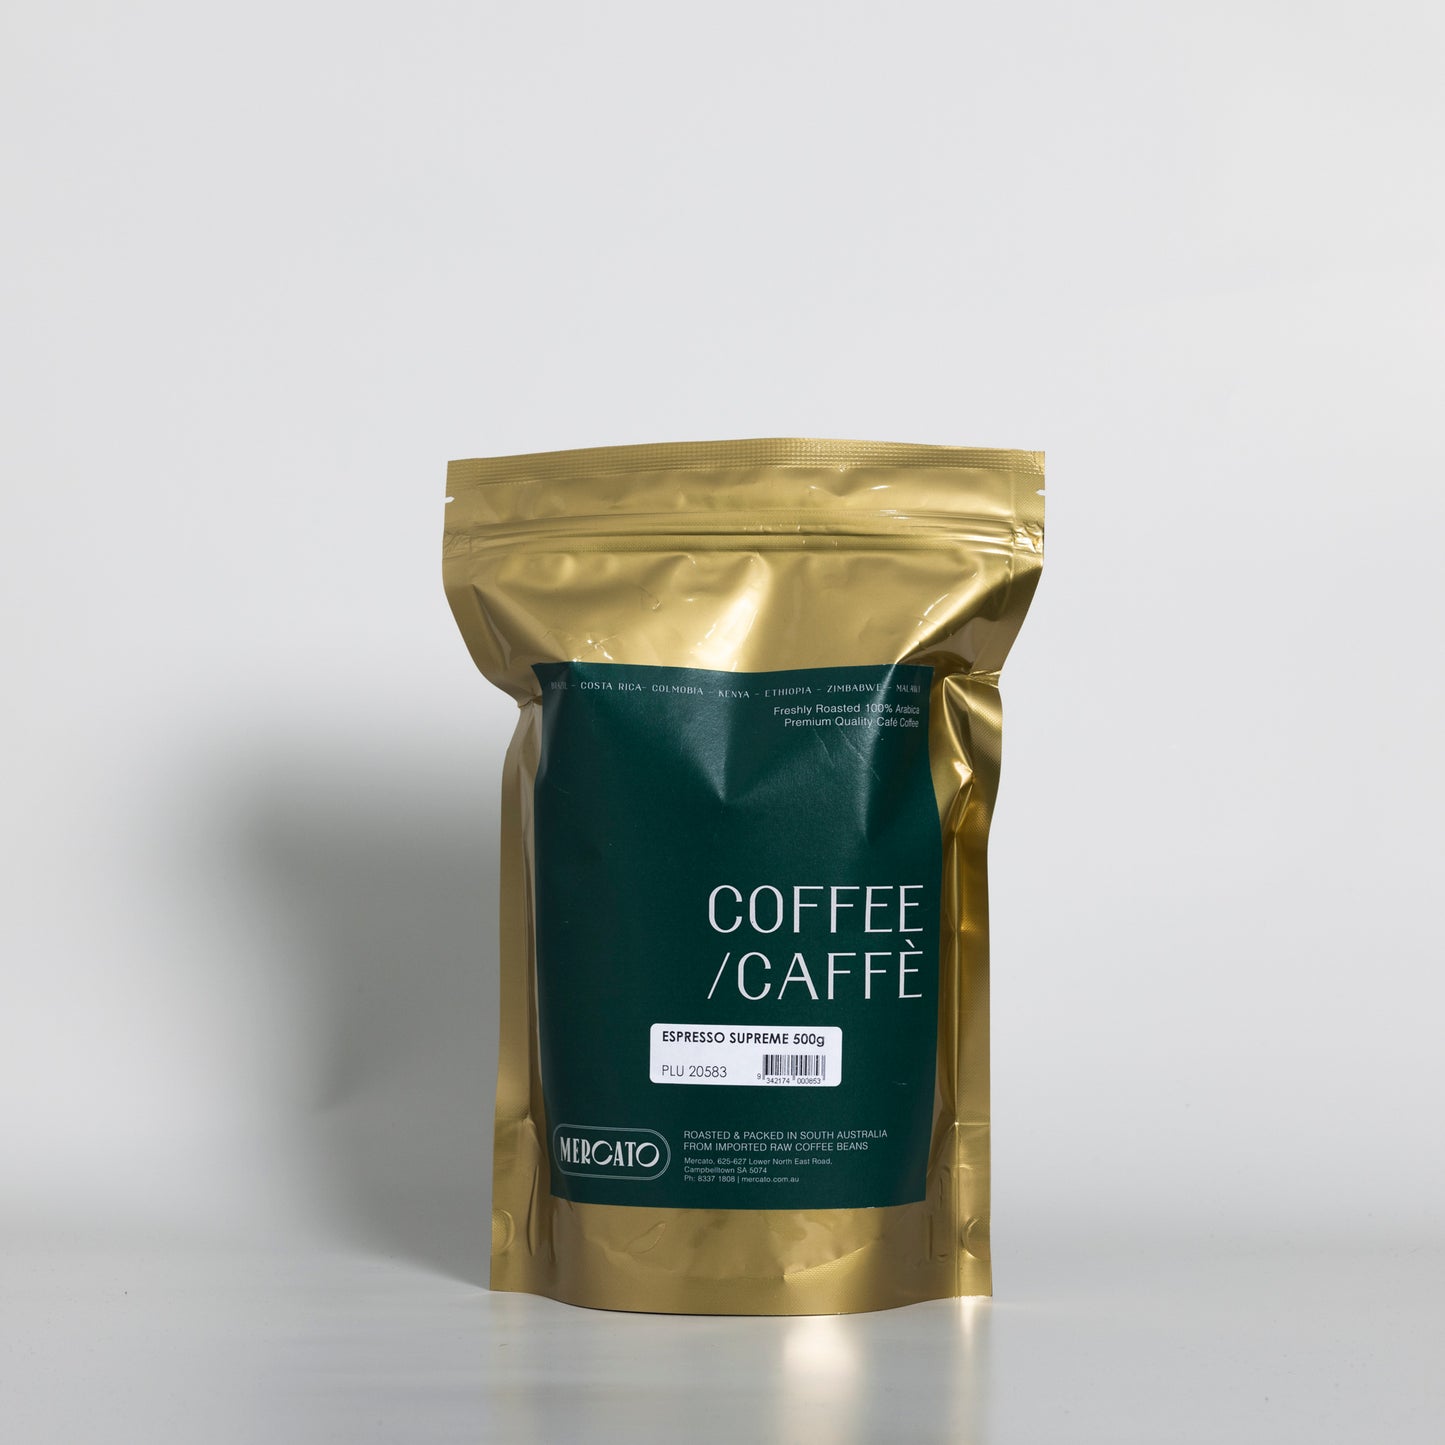 
                  
                    Aroma Espresso Supreme Coffee Beans
                  
                